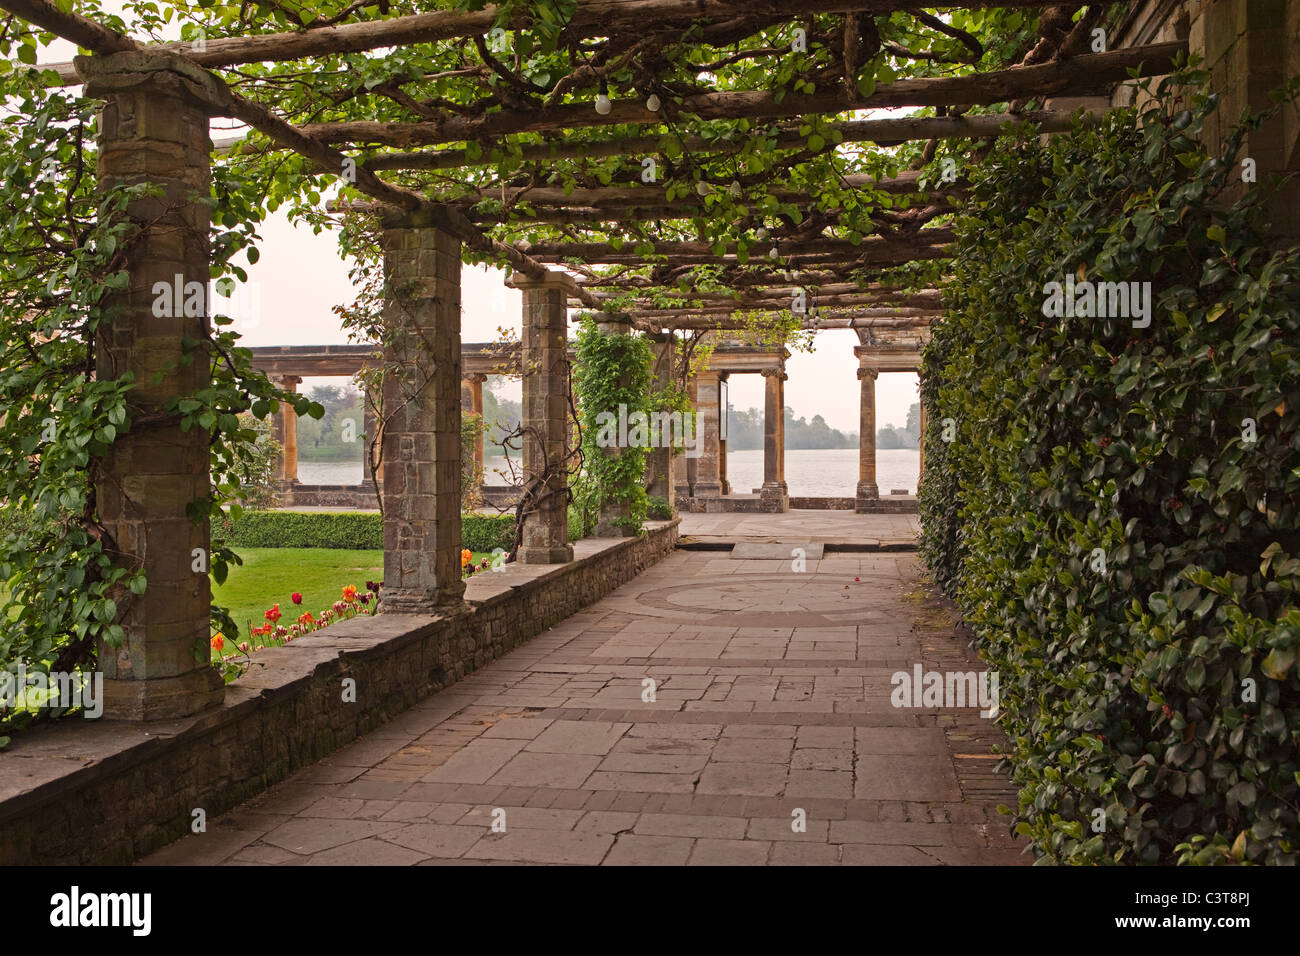 Loggia coperta immagini e fotografie stock ad alta risoluzione - Alamy